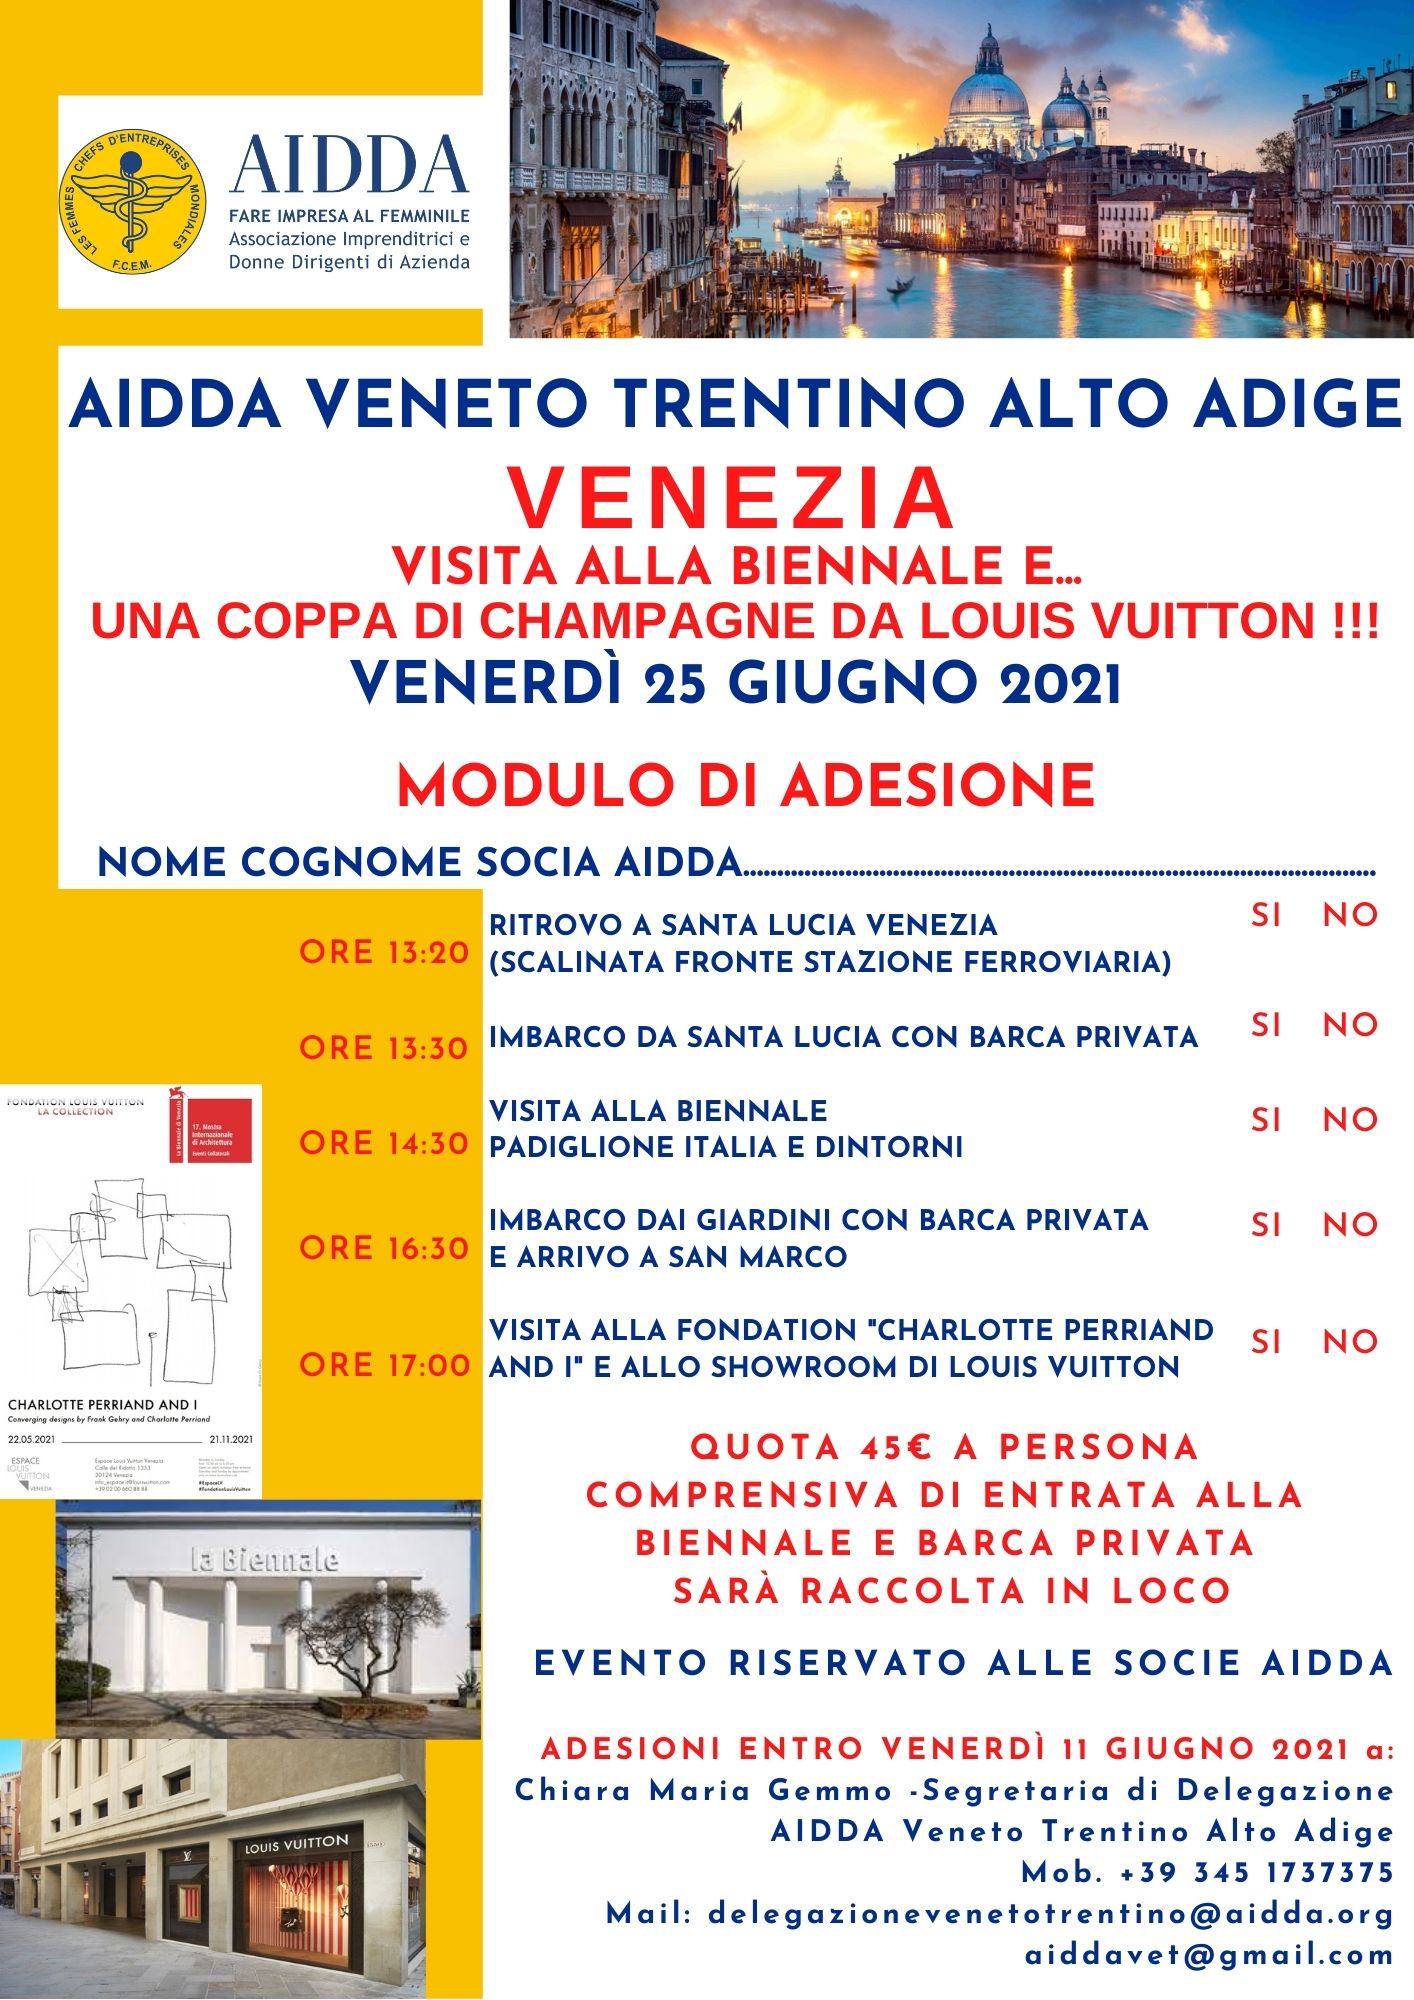 Modulo Adesione - AIDDA VTAA Venezia 25 giugno 2021 .jpg